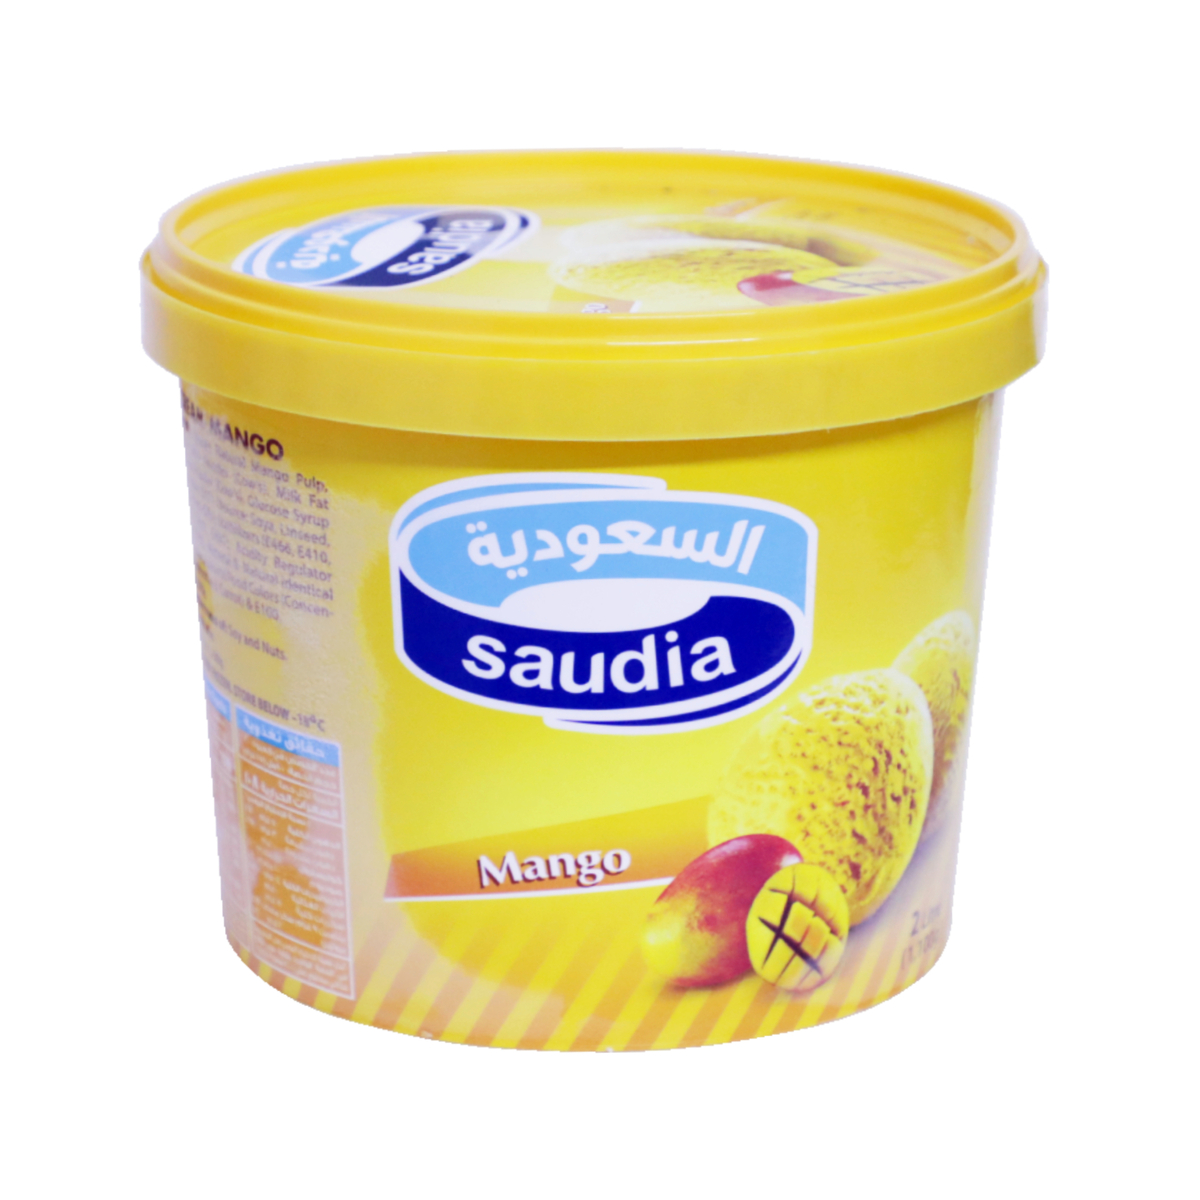 اشتري قم بشراء السعودية ايسكريم المانجو 2 لتر Online at Best Price من الموقع - من لولو هايبر ماركت Ice Cream Take Home في السعودية